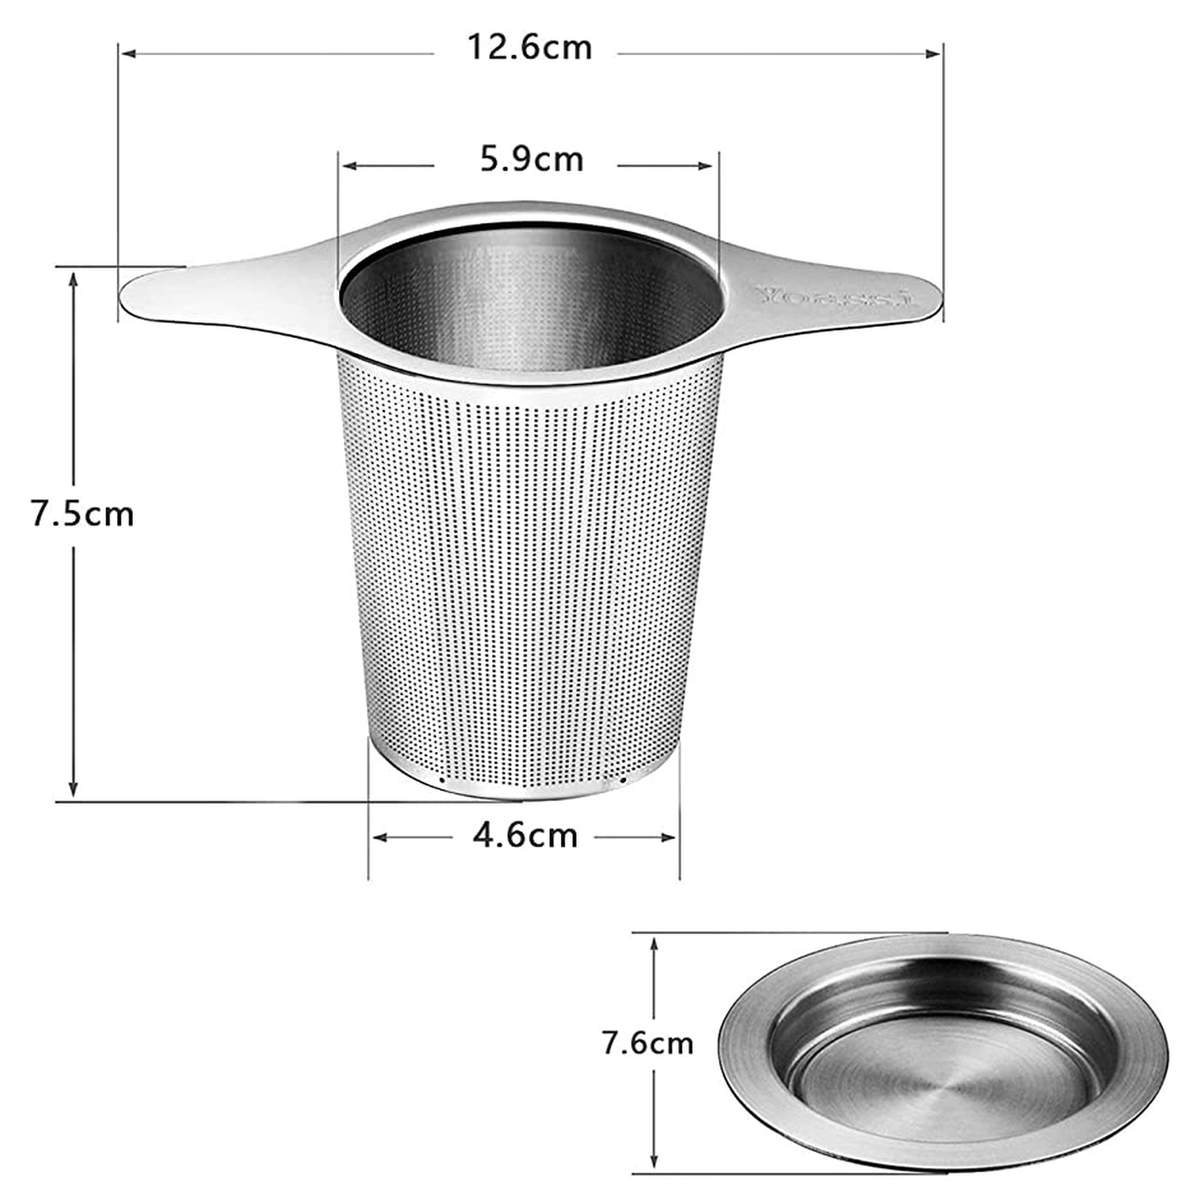 Filtre à thé en acier inoxydable, Ø 5 cm, compatible lave-vaisselle